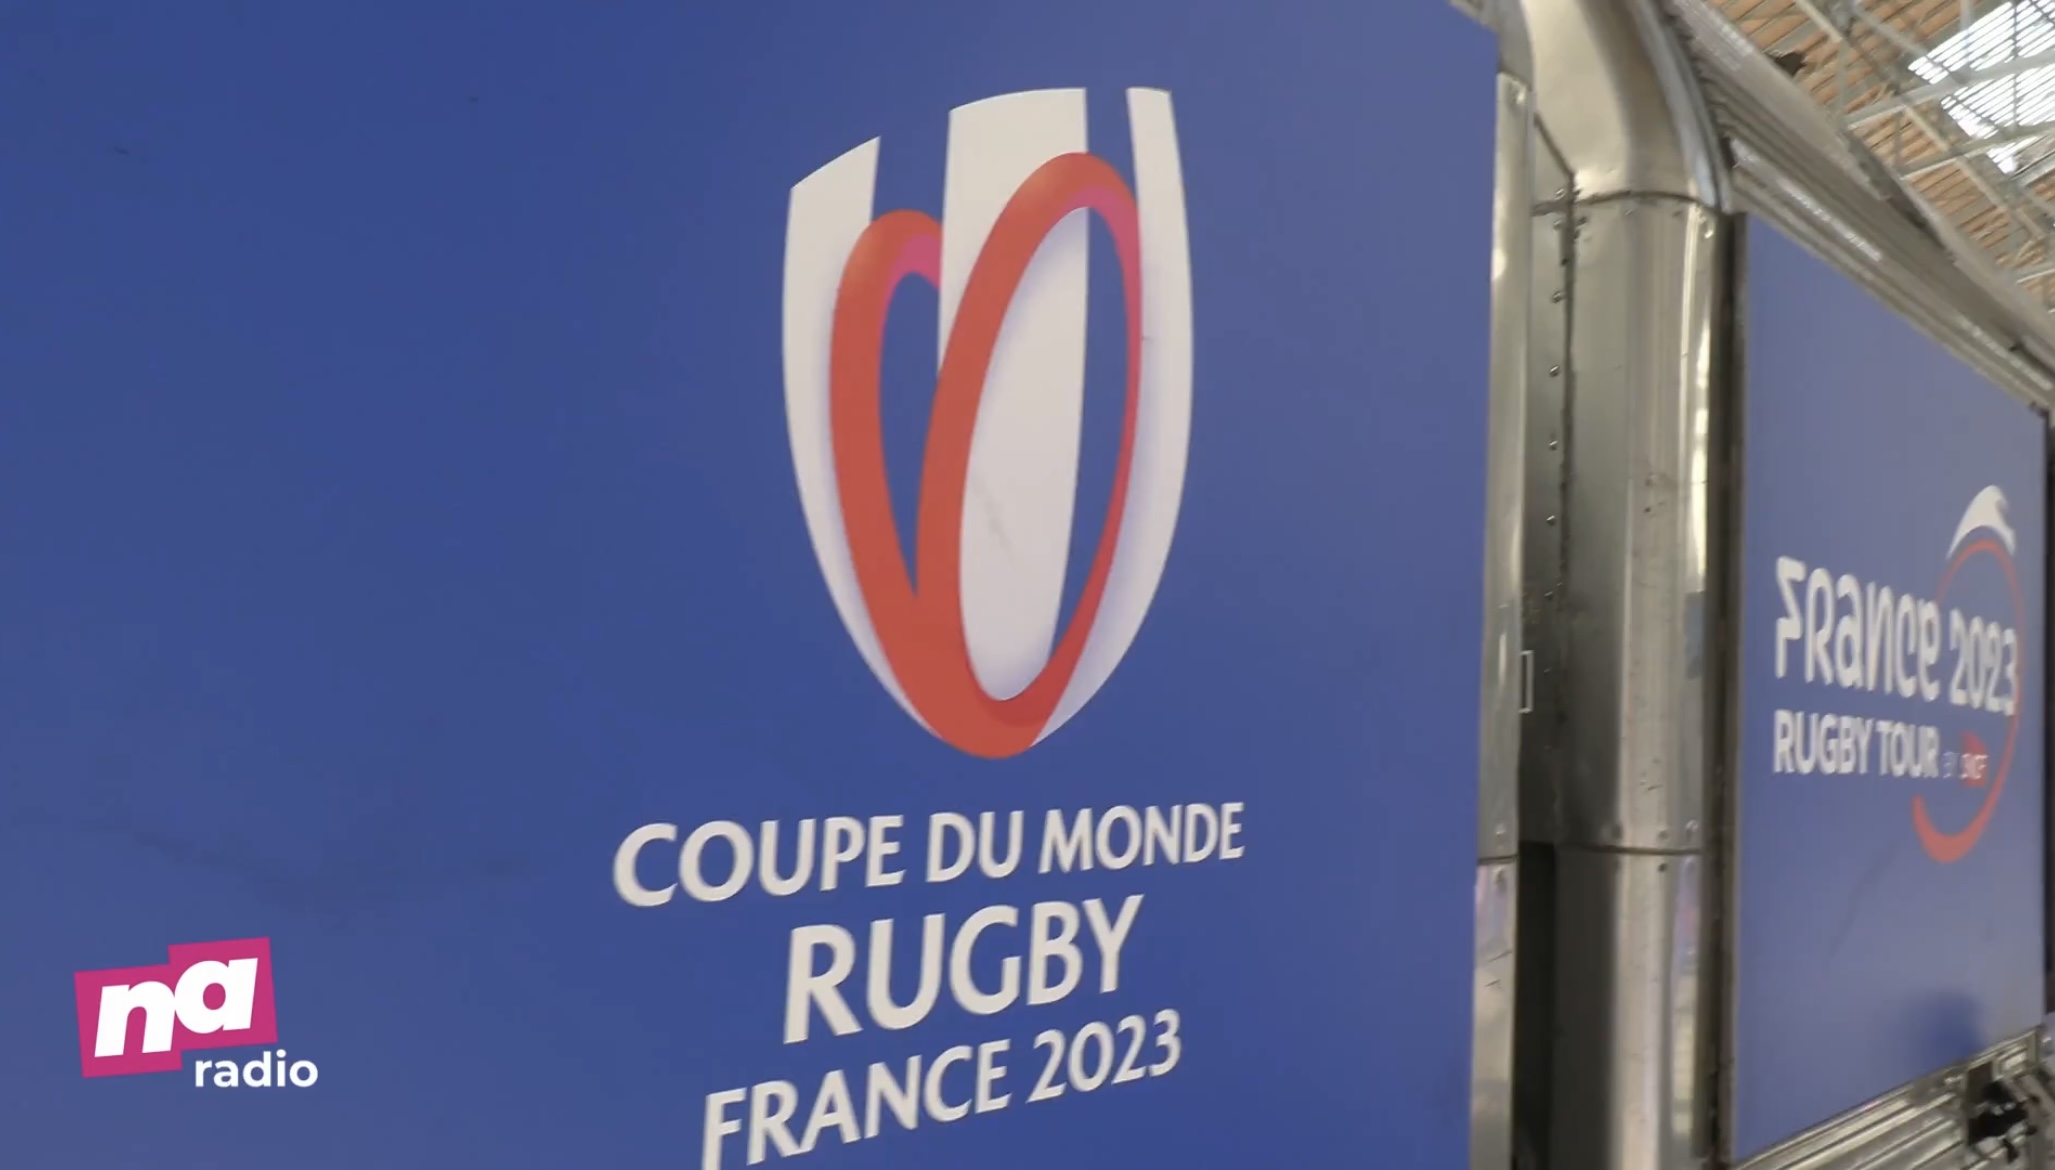 J-365 avant l’ouverture de la coupe du monde de rugby 2023 